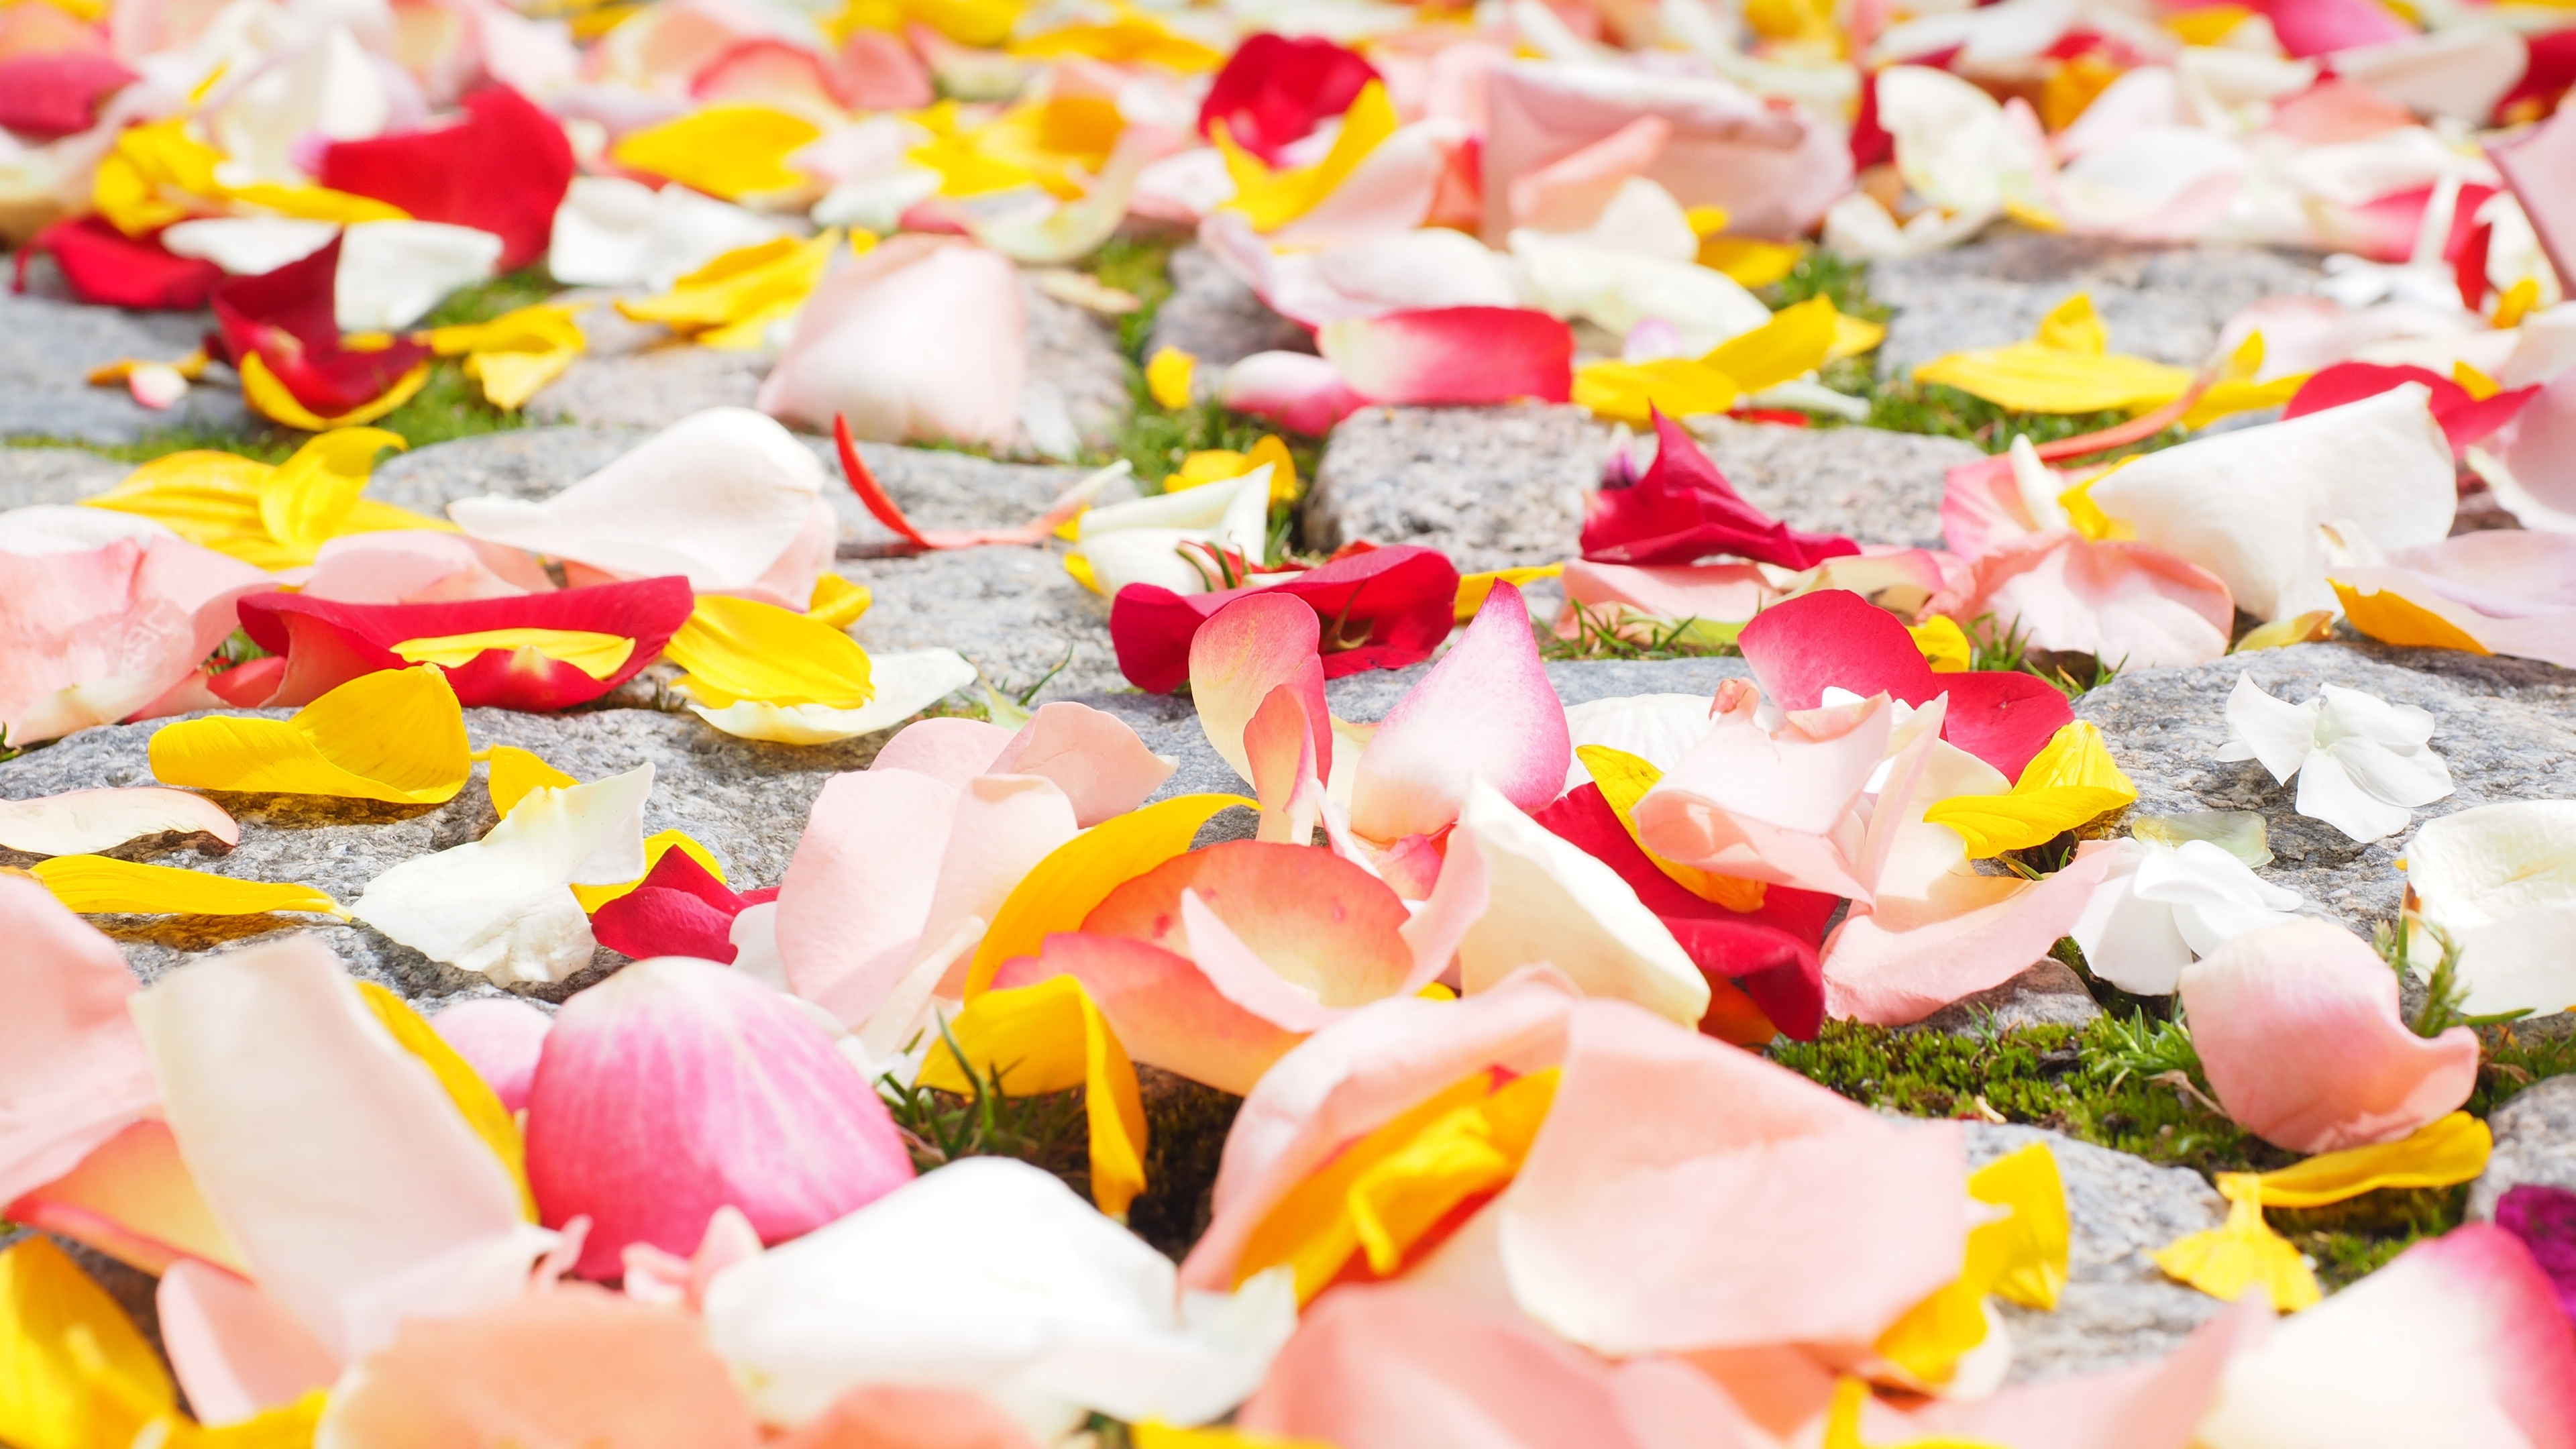 Rose Petals Wallpaper in jpg format for free download